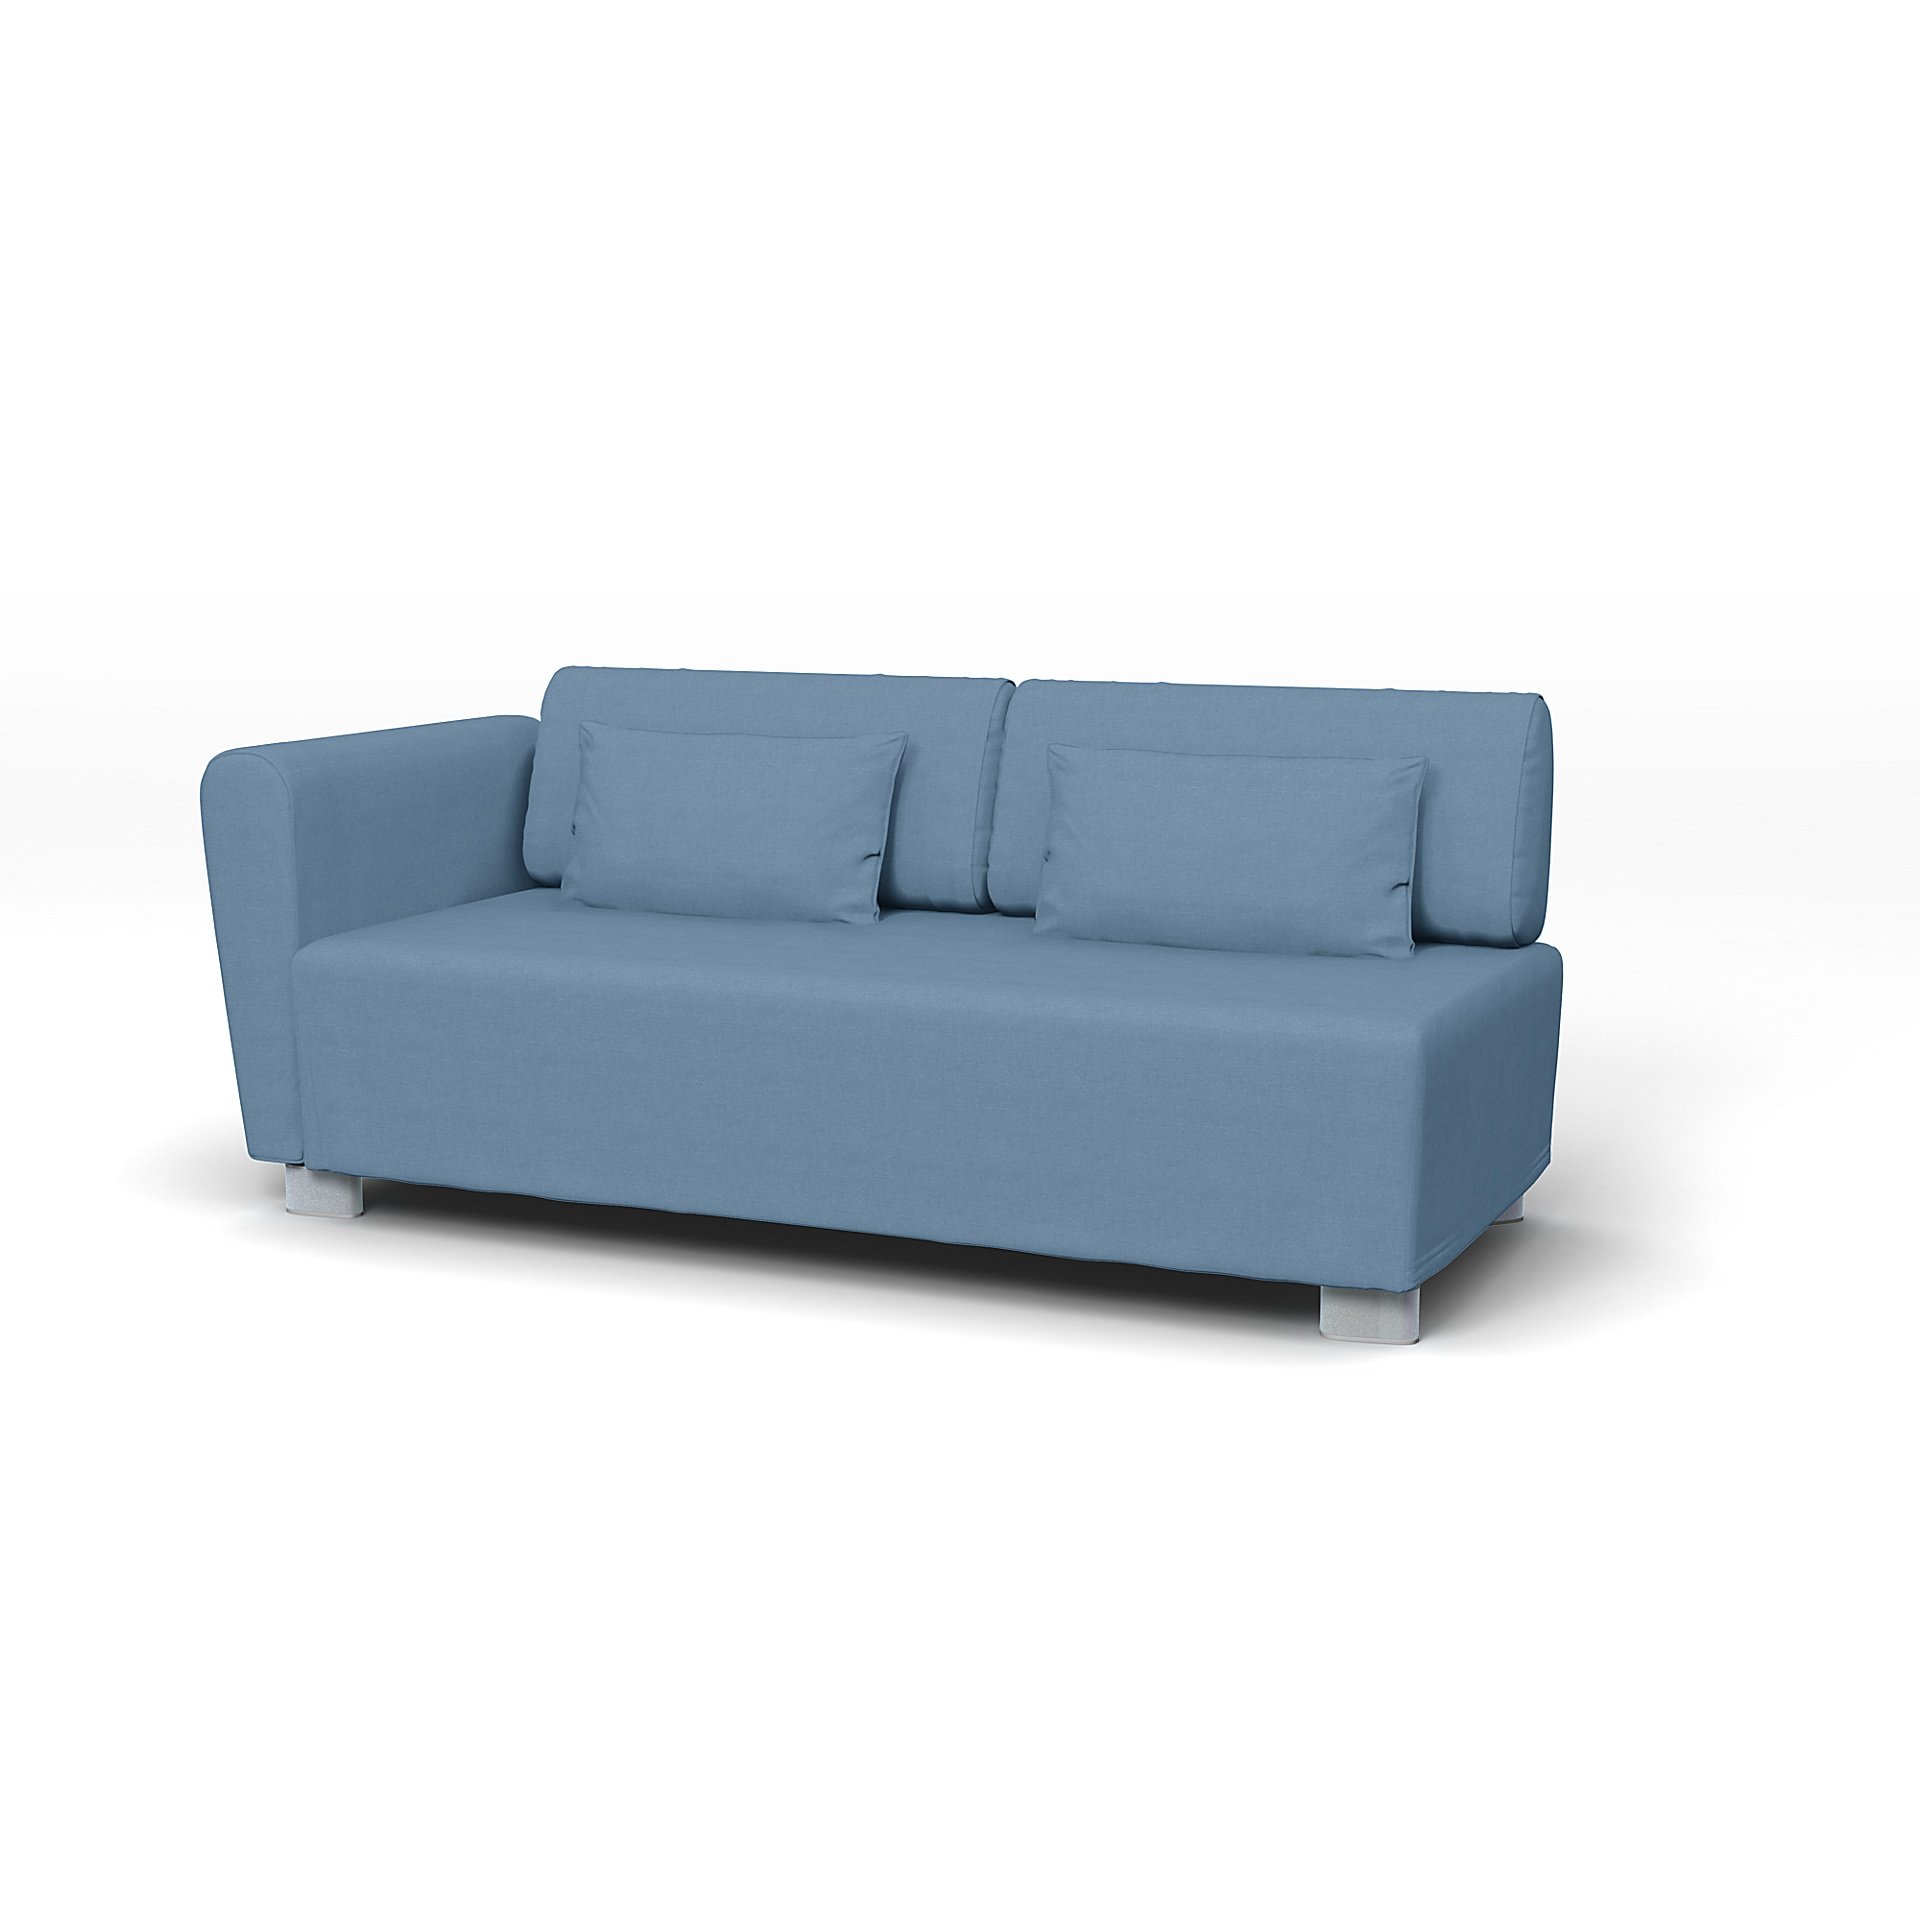 IKEA - Mysinge 2 Seater Sofa with Armrest Cover, Vintage Blue, Linen - Bemz